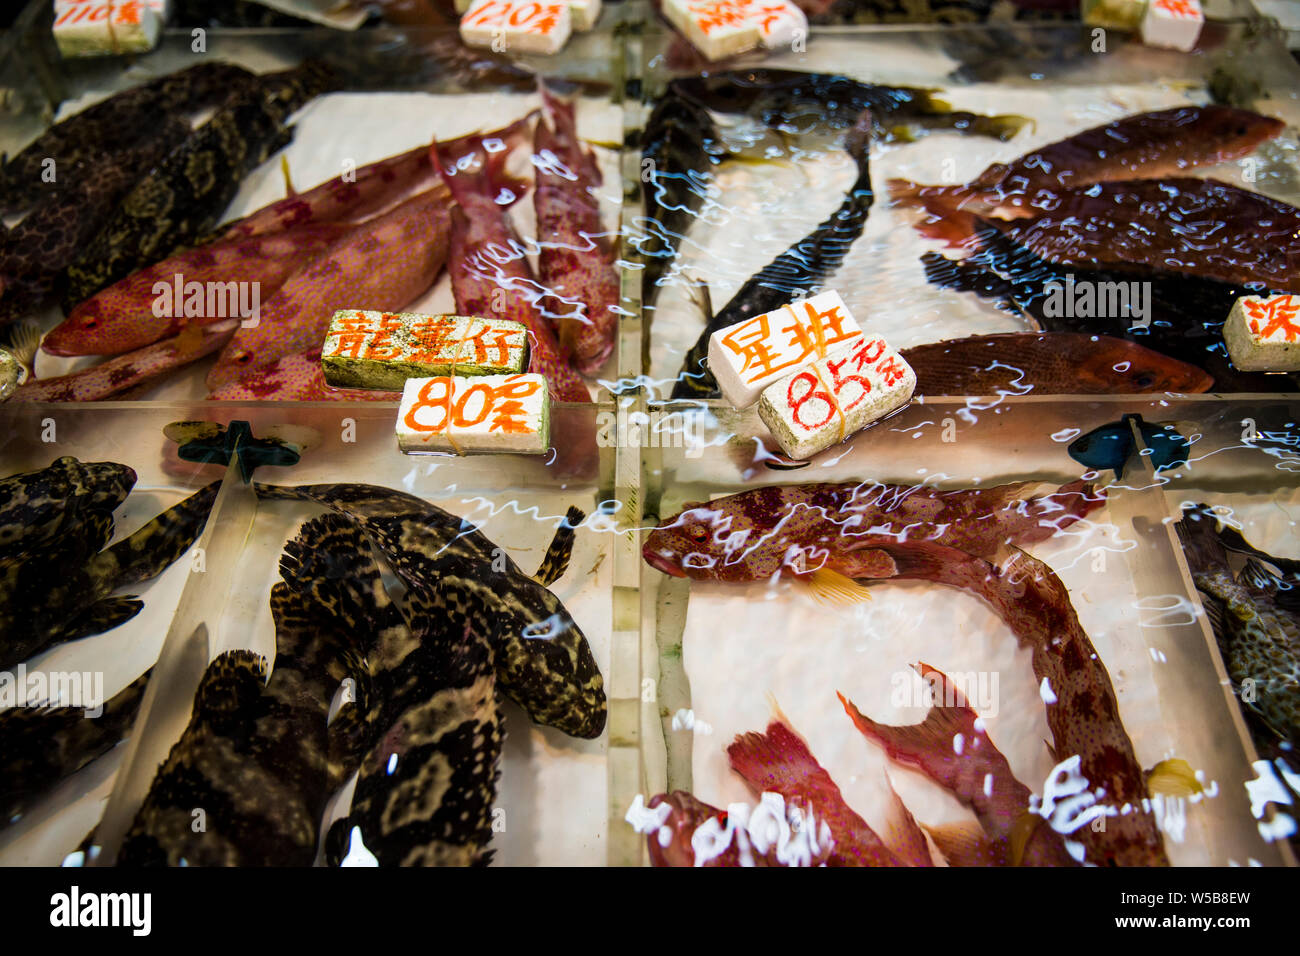 Live fish at a fishmonger stall inside Fa Yuen market. Hong Kong Stock Photo